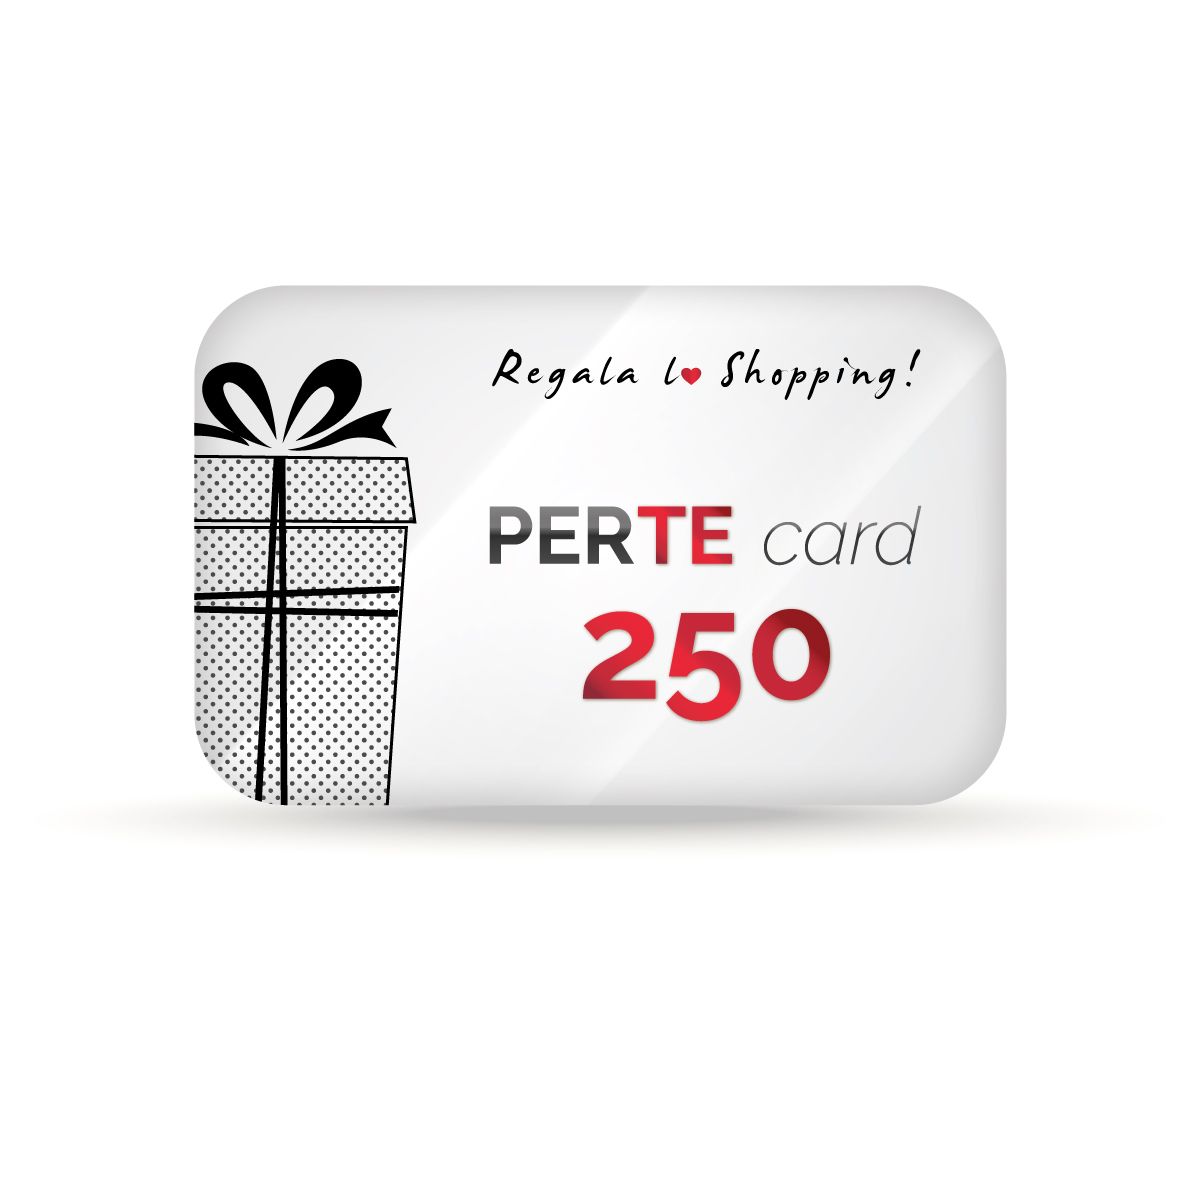 PERTE Card 250